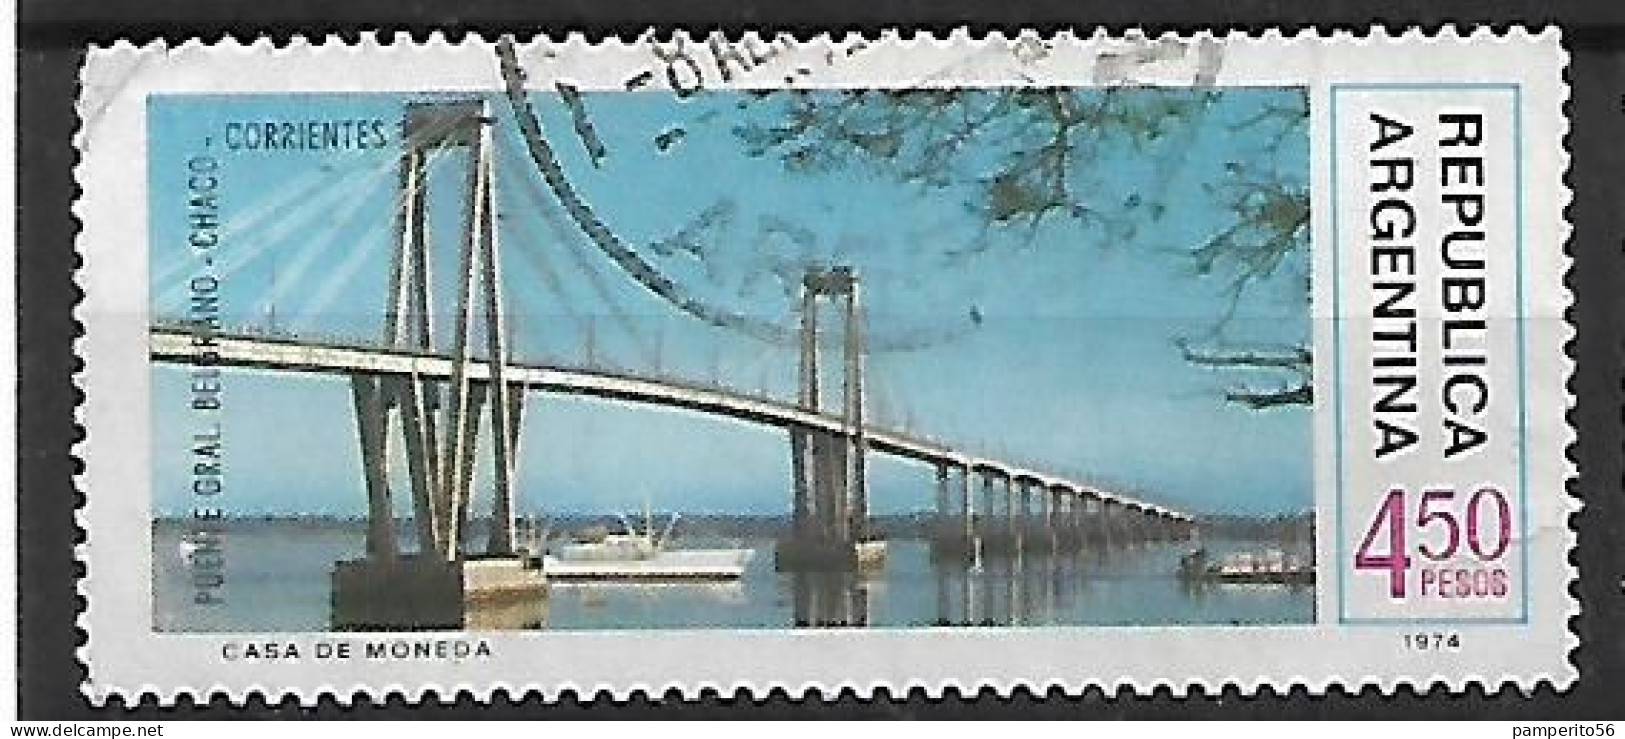 ARGENTINA - AÑO 1974 - Serie Obras De Infraestructura Nacional - Puente Chaco Corrientes - Usado - Gebruikt